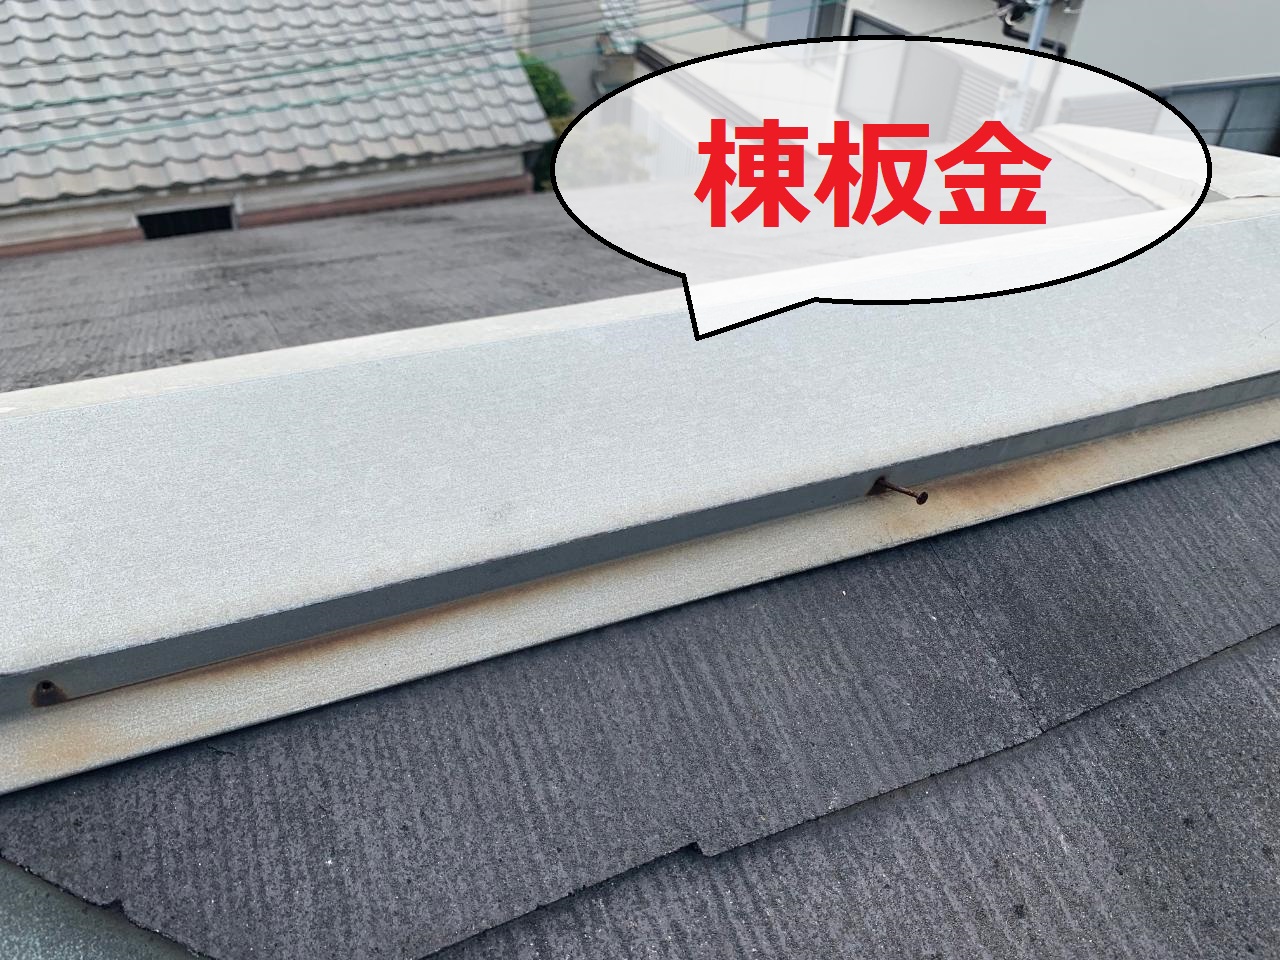 スレート屋根の棟板金が浮いている様子